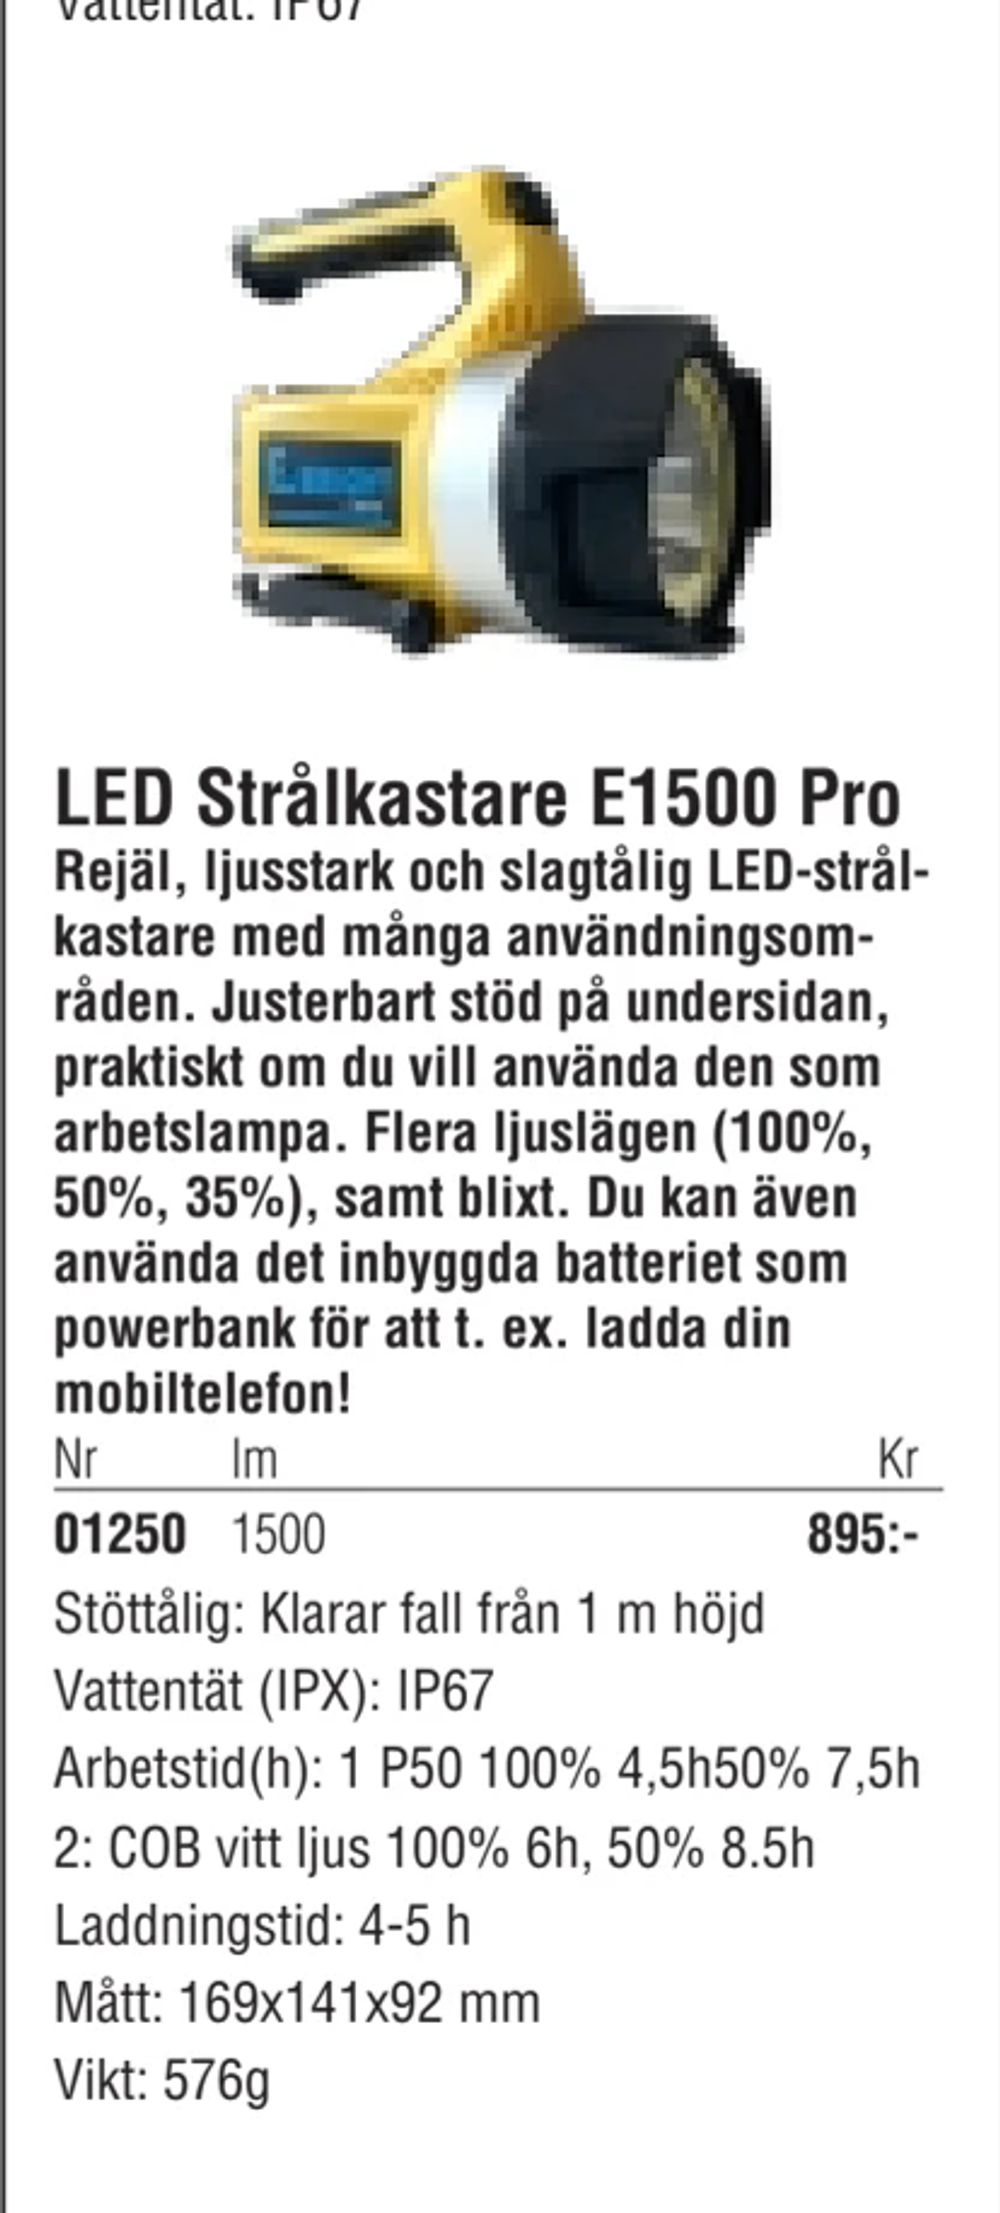 Erbjudanden på LED Strålkastare E1500 Pro från Erlandsons Brygga för 895 kr